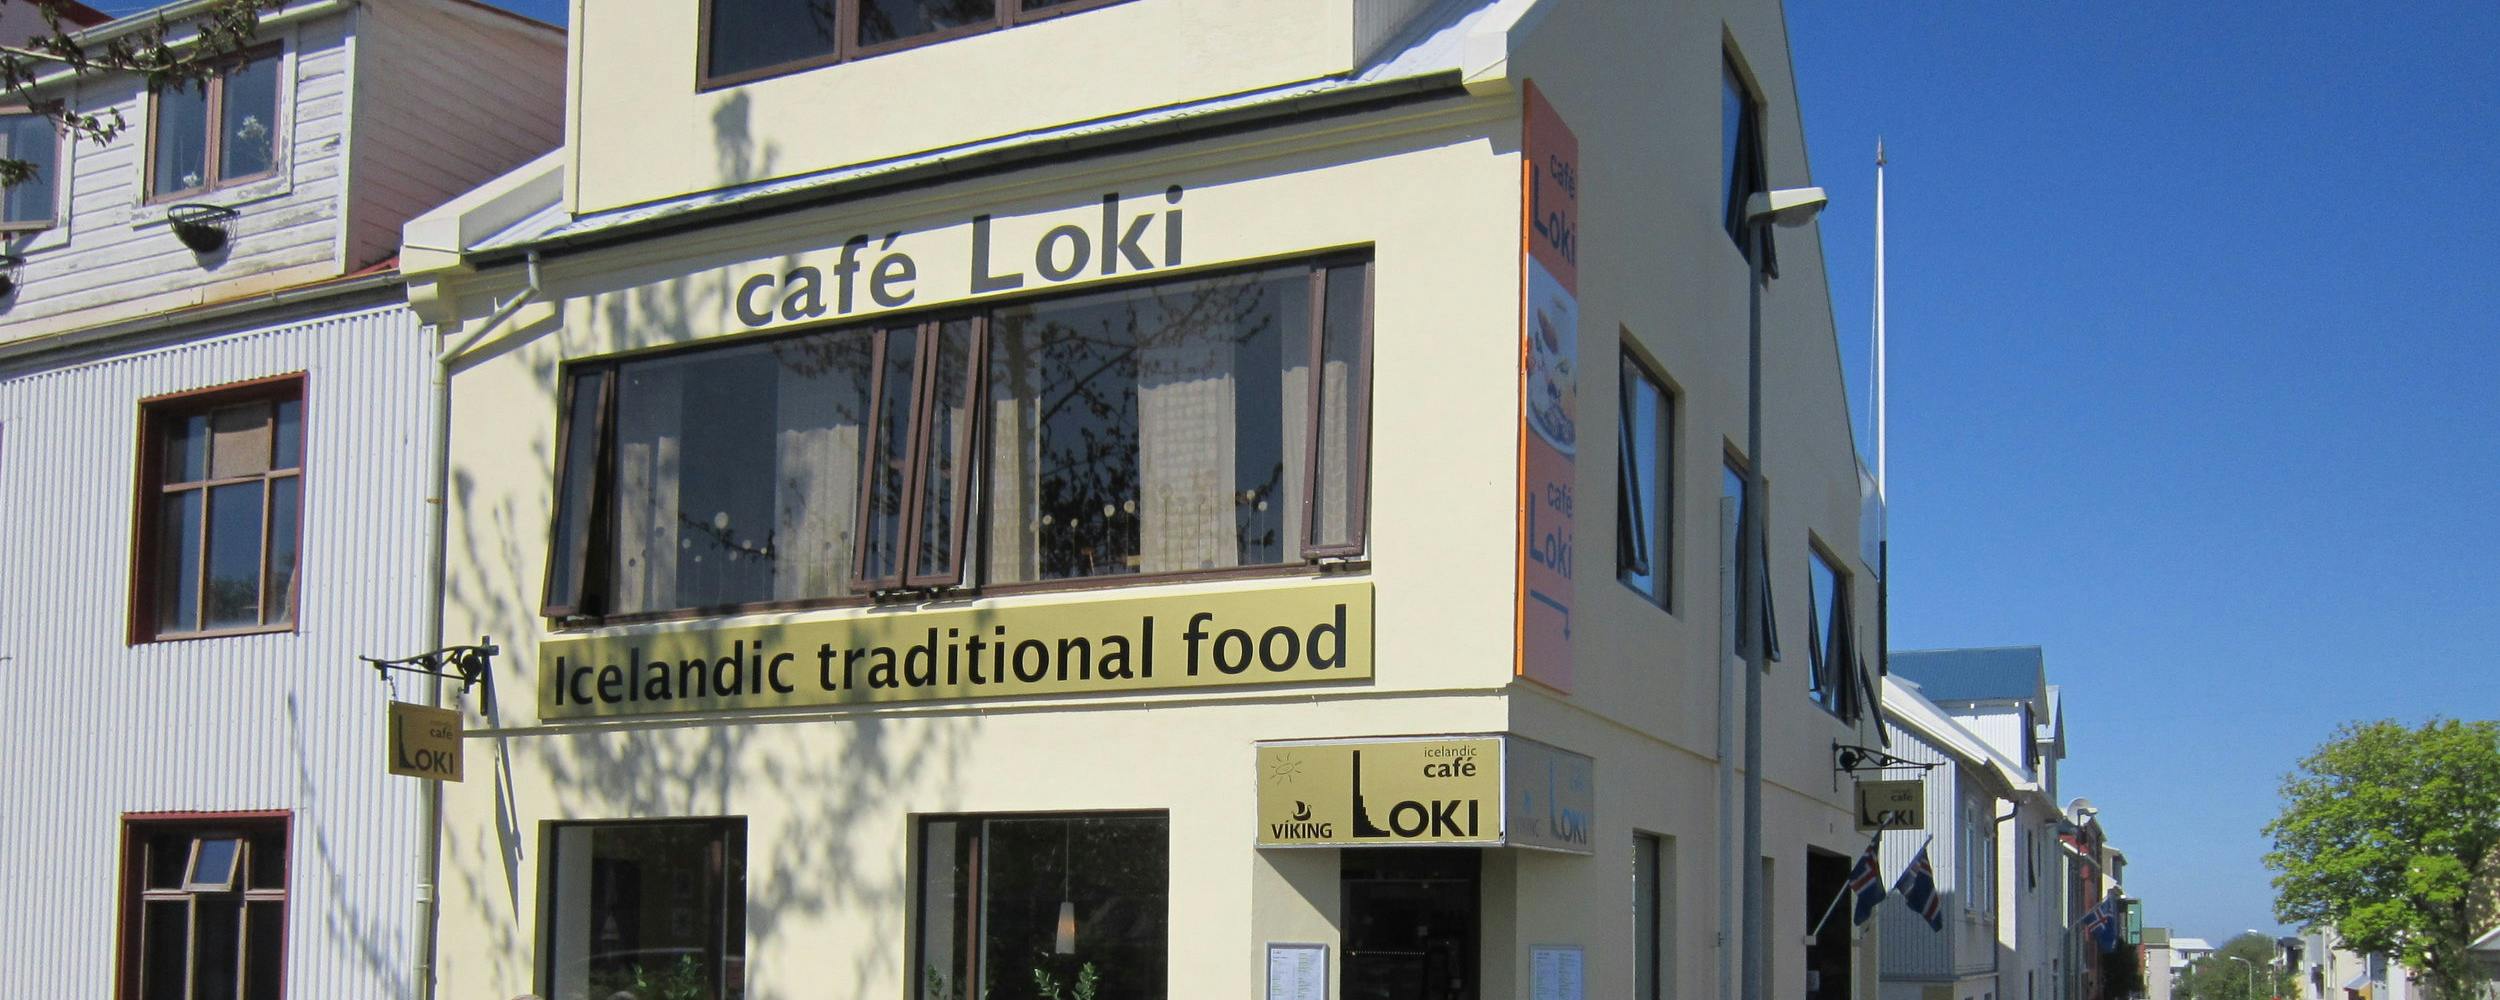 Cafe Loki in Reykjavik